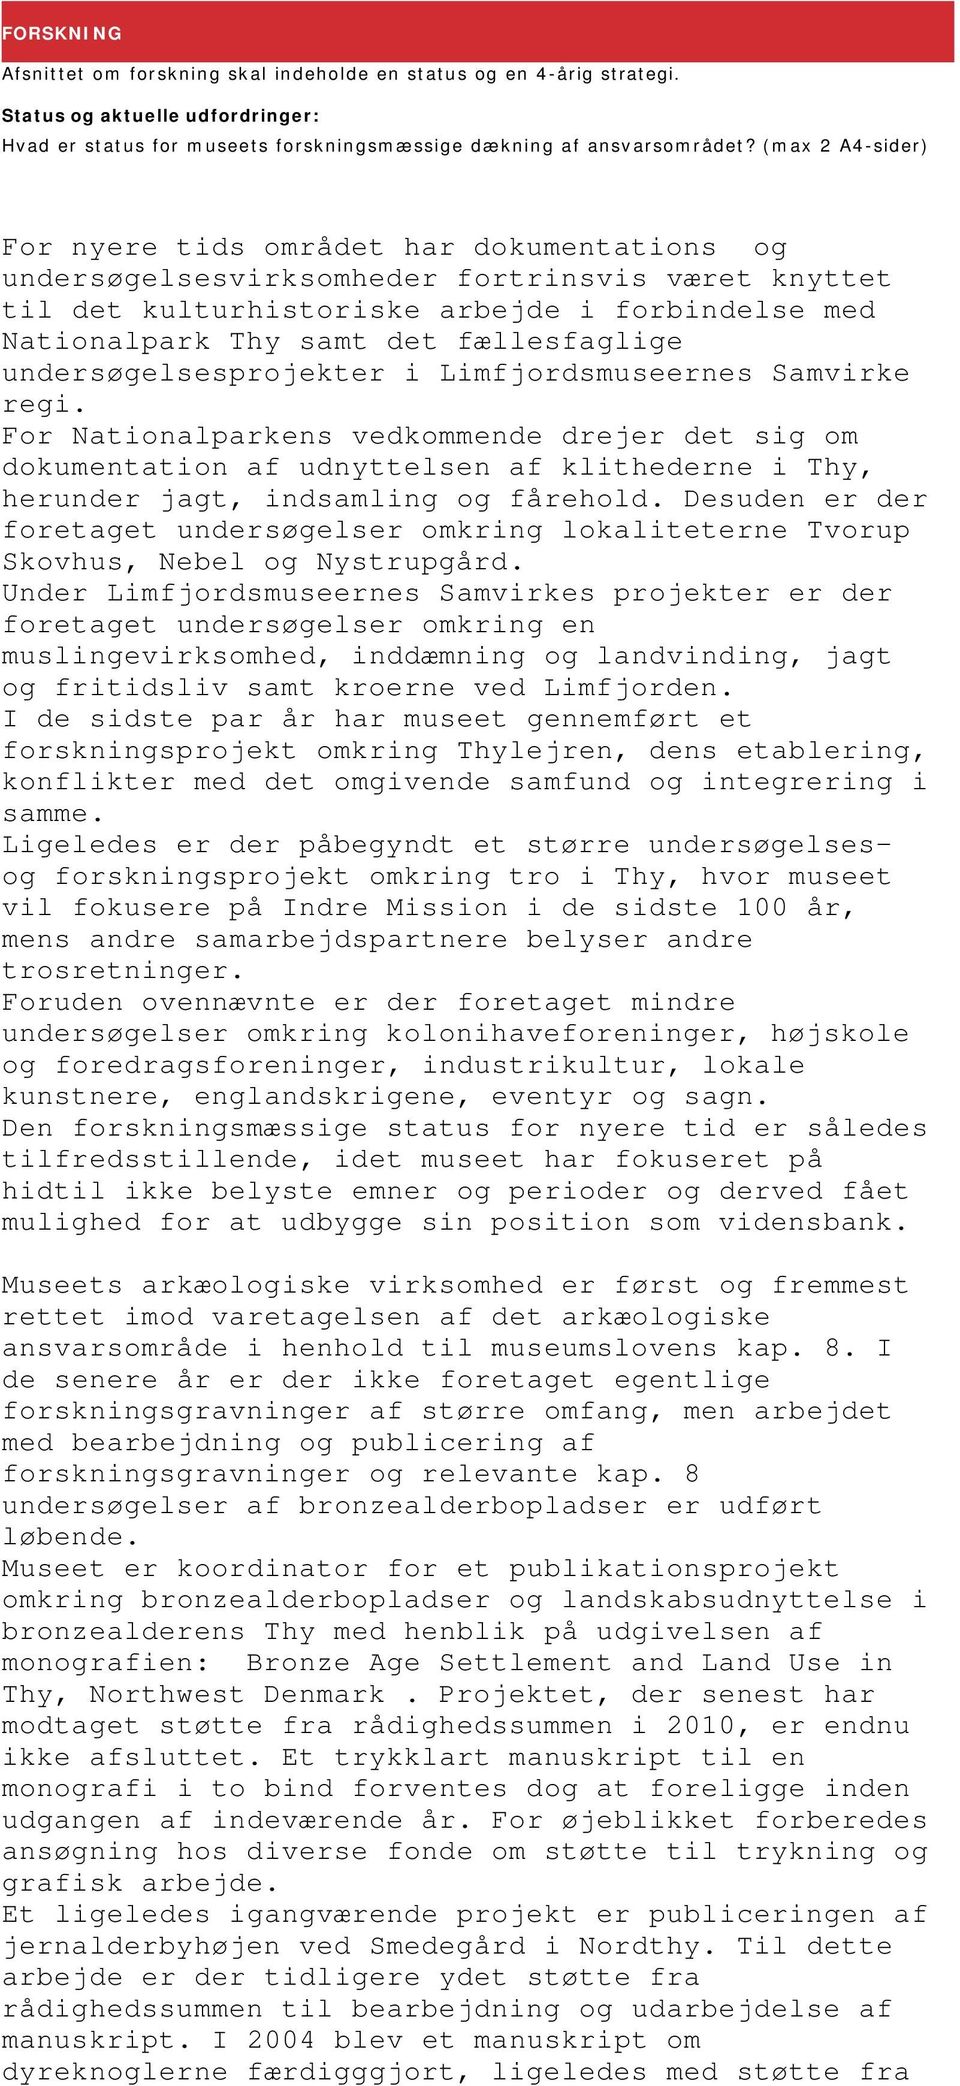 fællesfaglige undersøgelsesprojekter i Limfjordsmuseernes Samvirke regi.